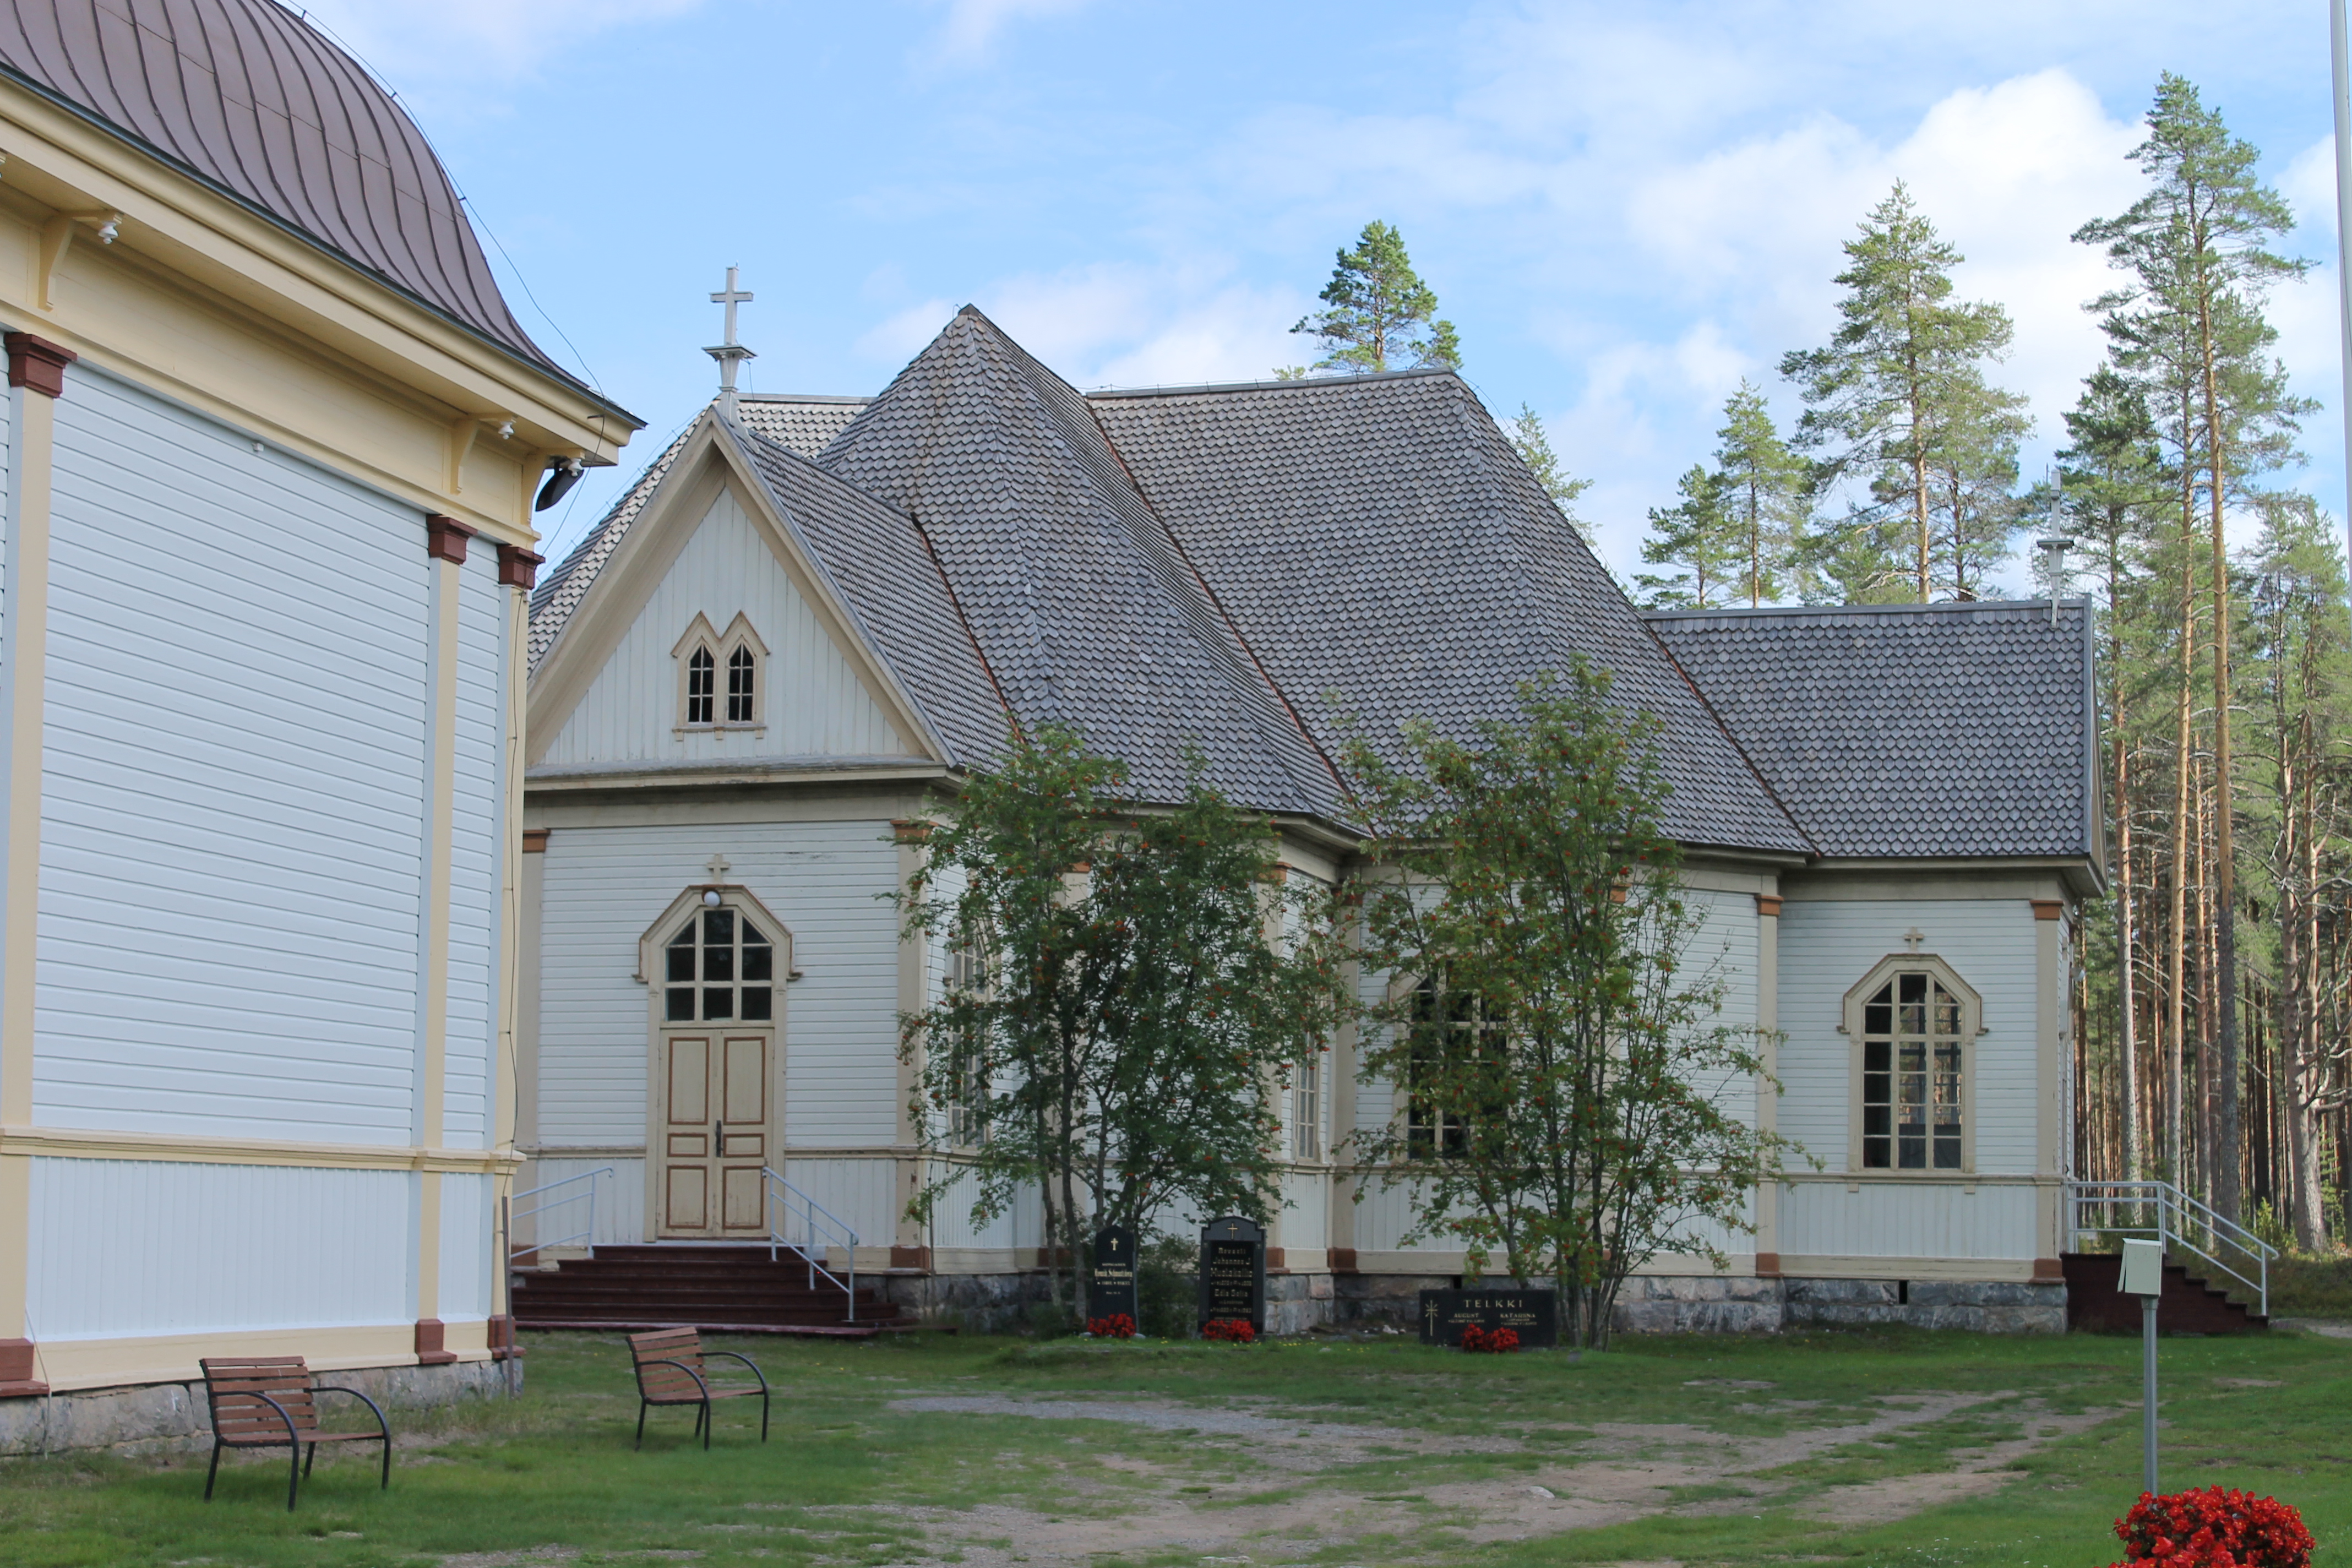 Säräisniemen kirkkokuvia. Kuvat: Pekka Asikainen